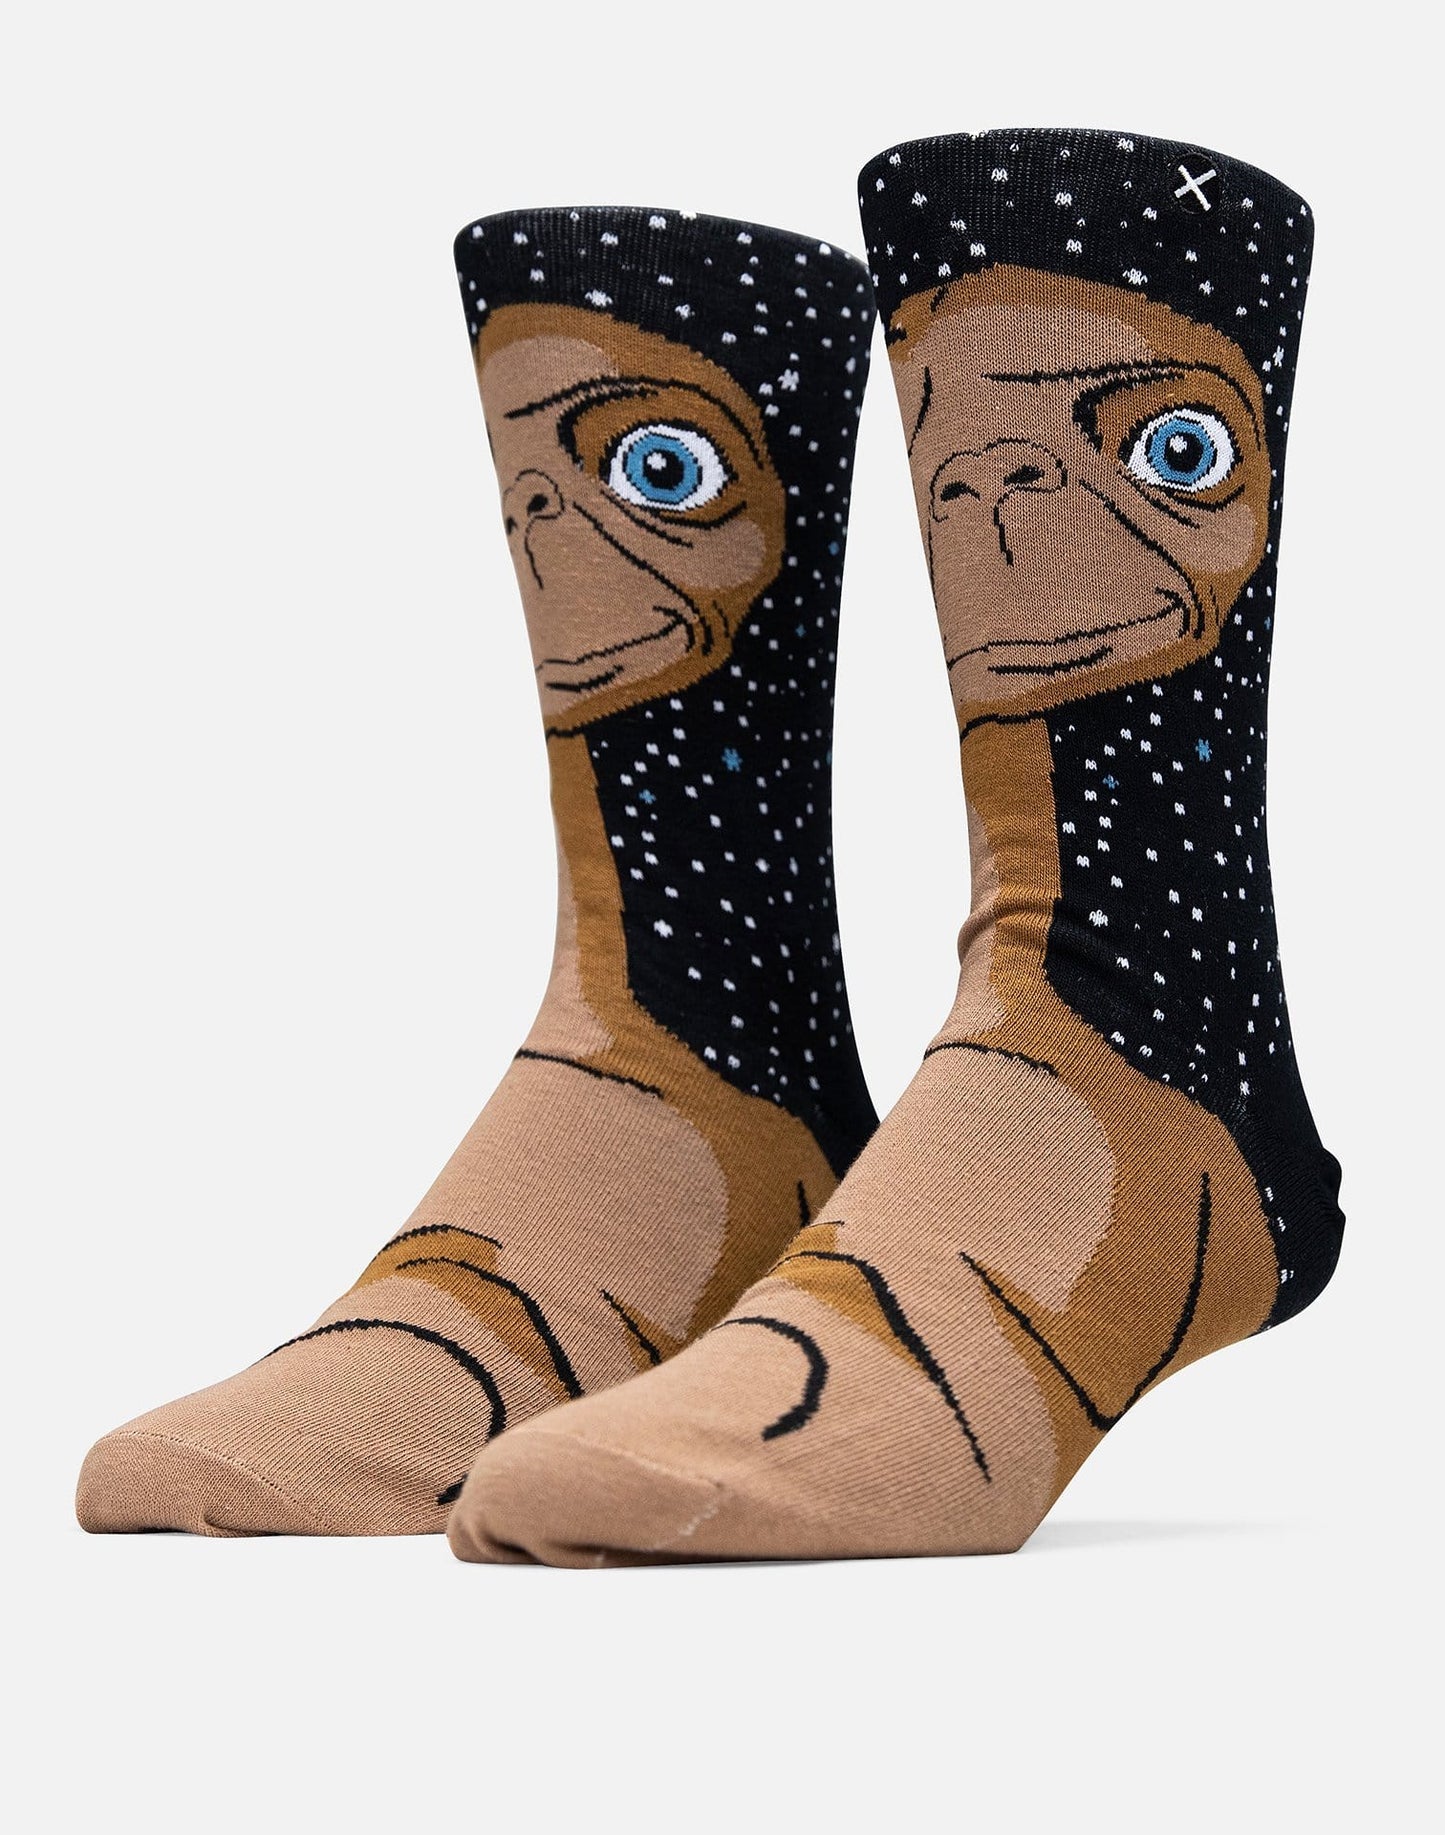 Men's Odd Sox E.T. Crew Socks